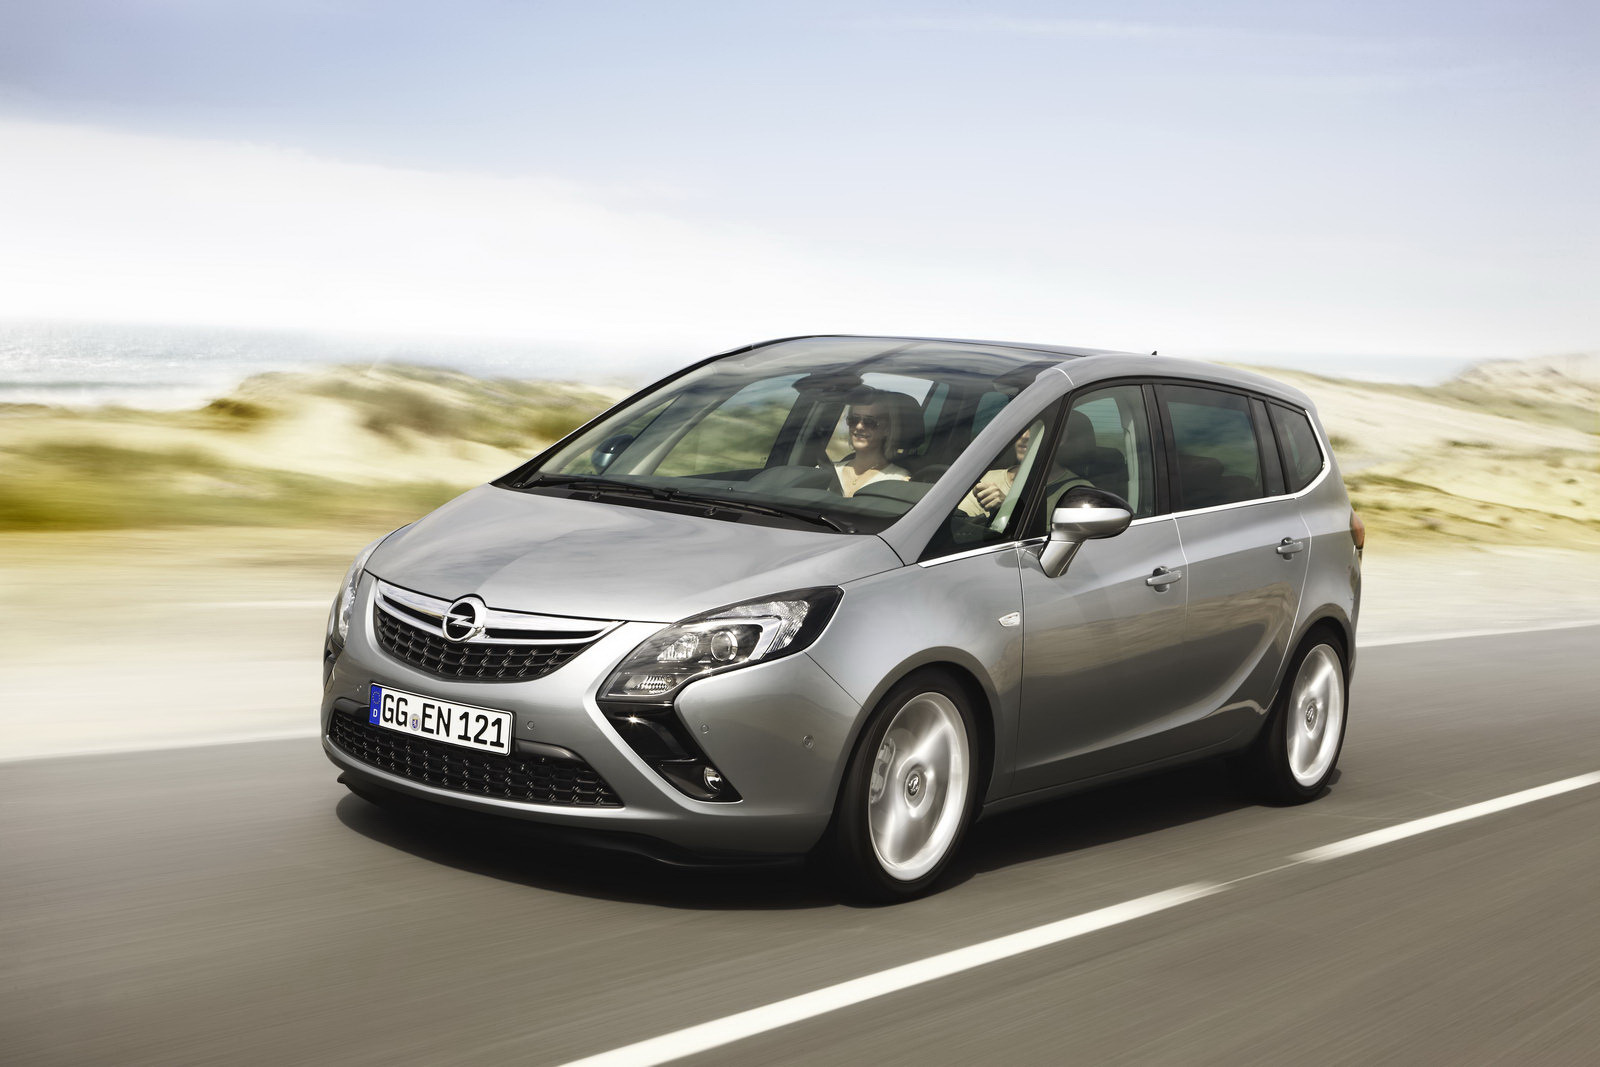 Noul Opel Zafira Tourer arata similar cu conceptul cu acelasi nume de la Geneva 2011